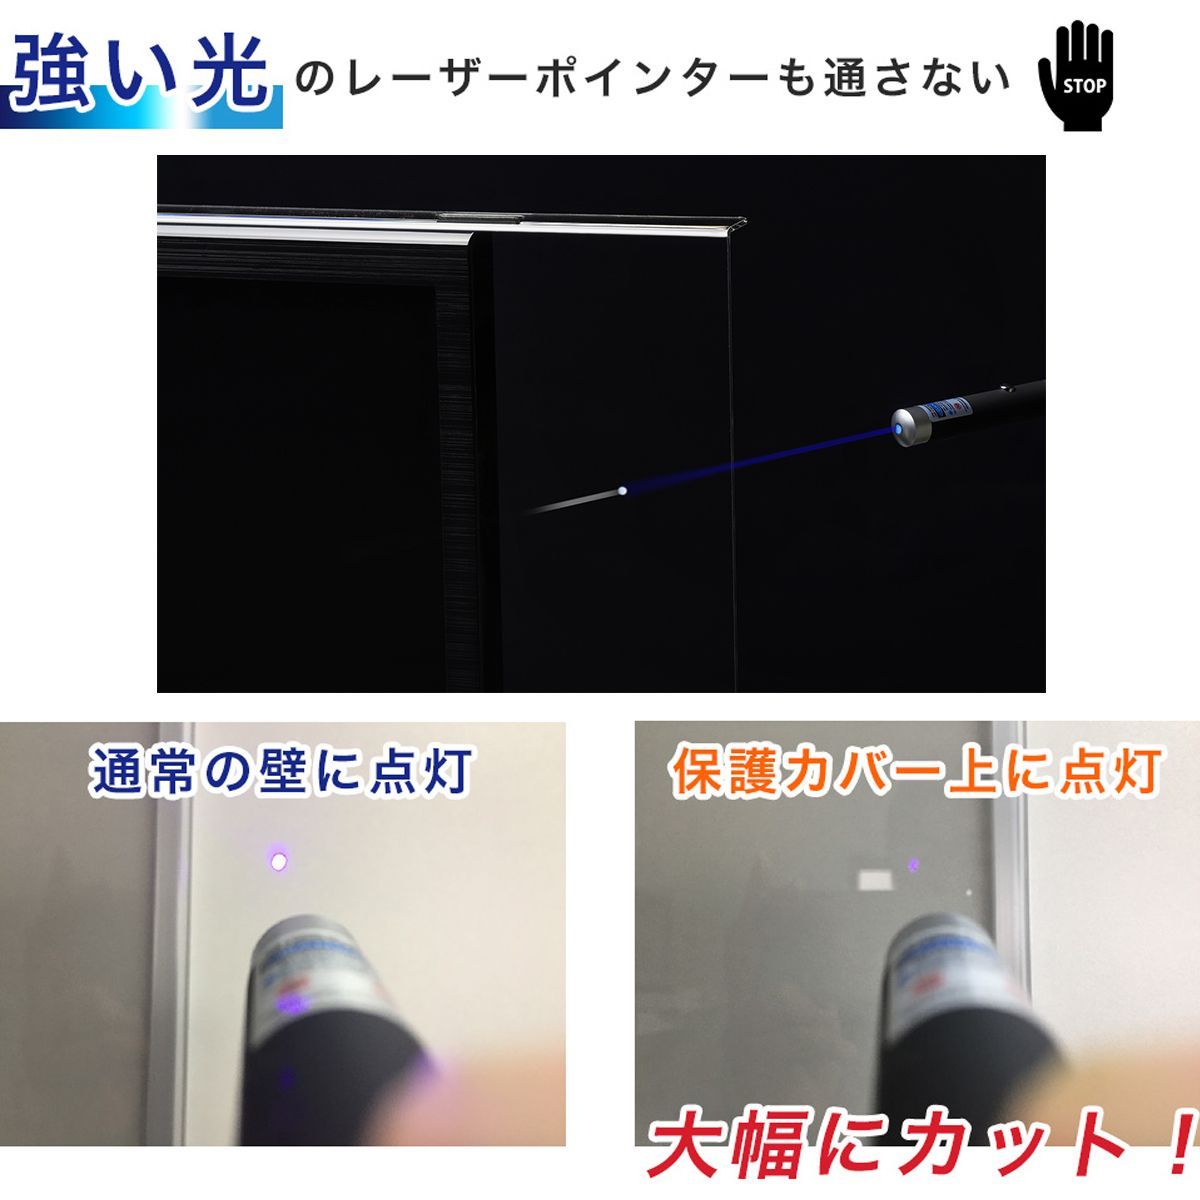 【新品】【50インチ】液晶テレビ用保護パネル / ブルーライトカットパネル-2